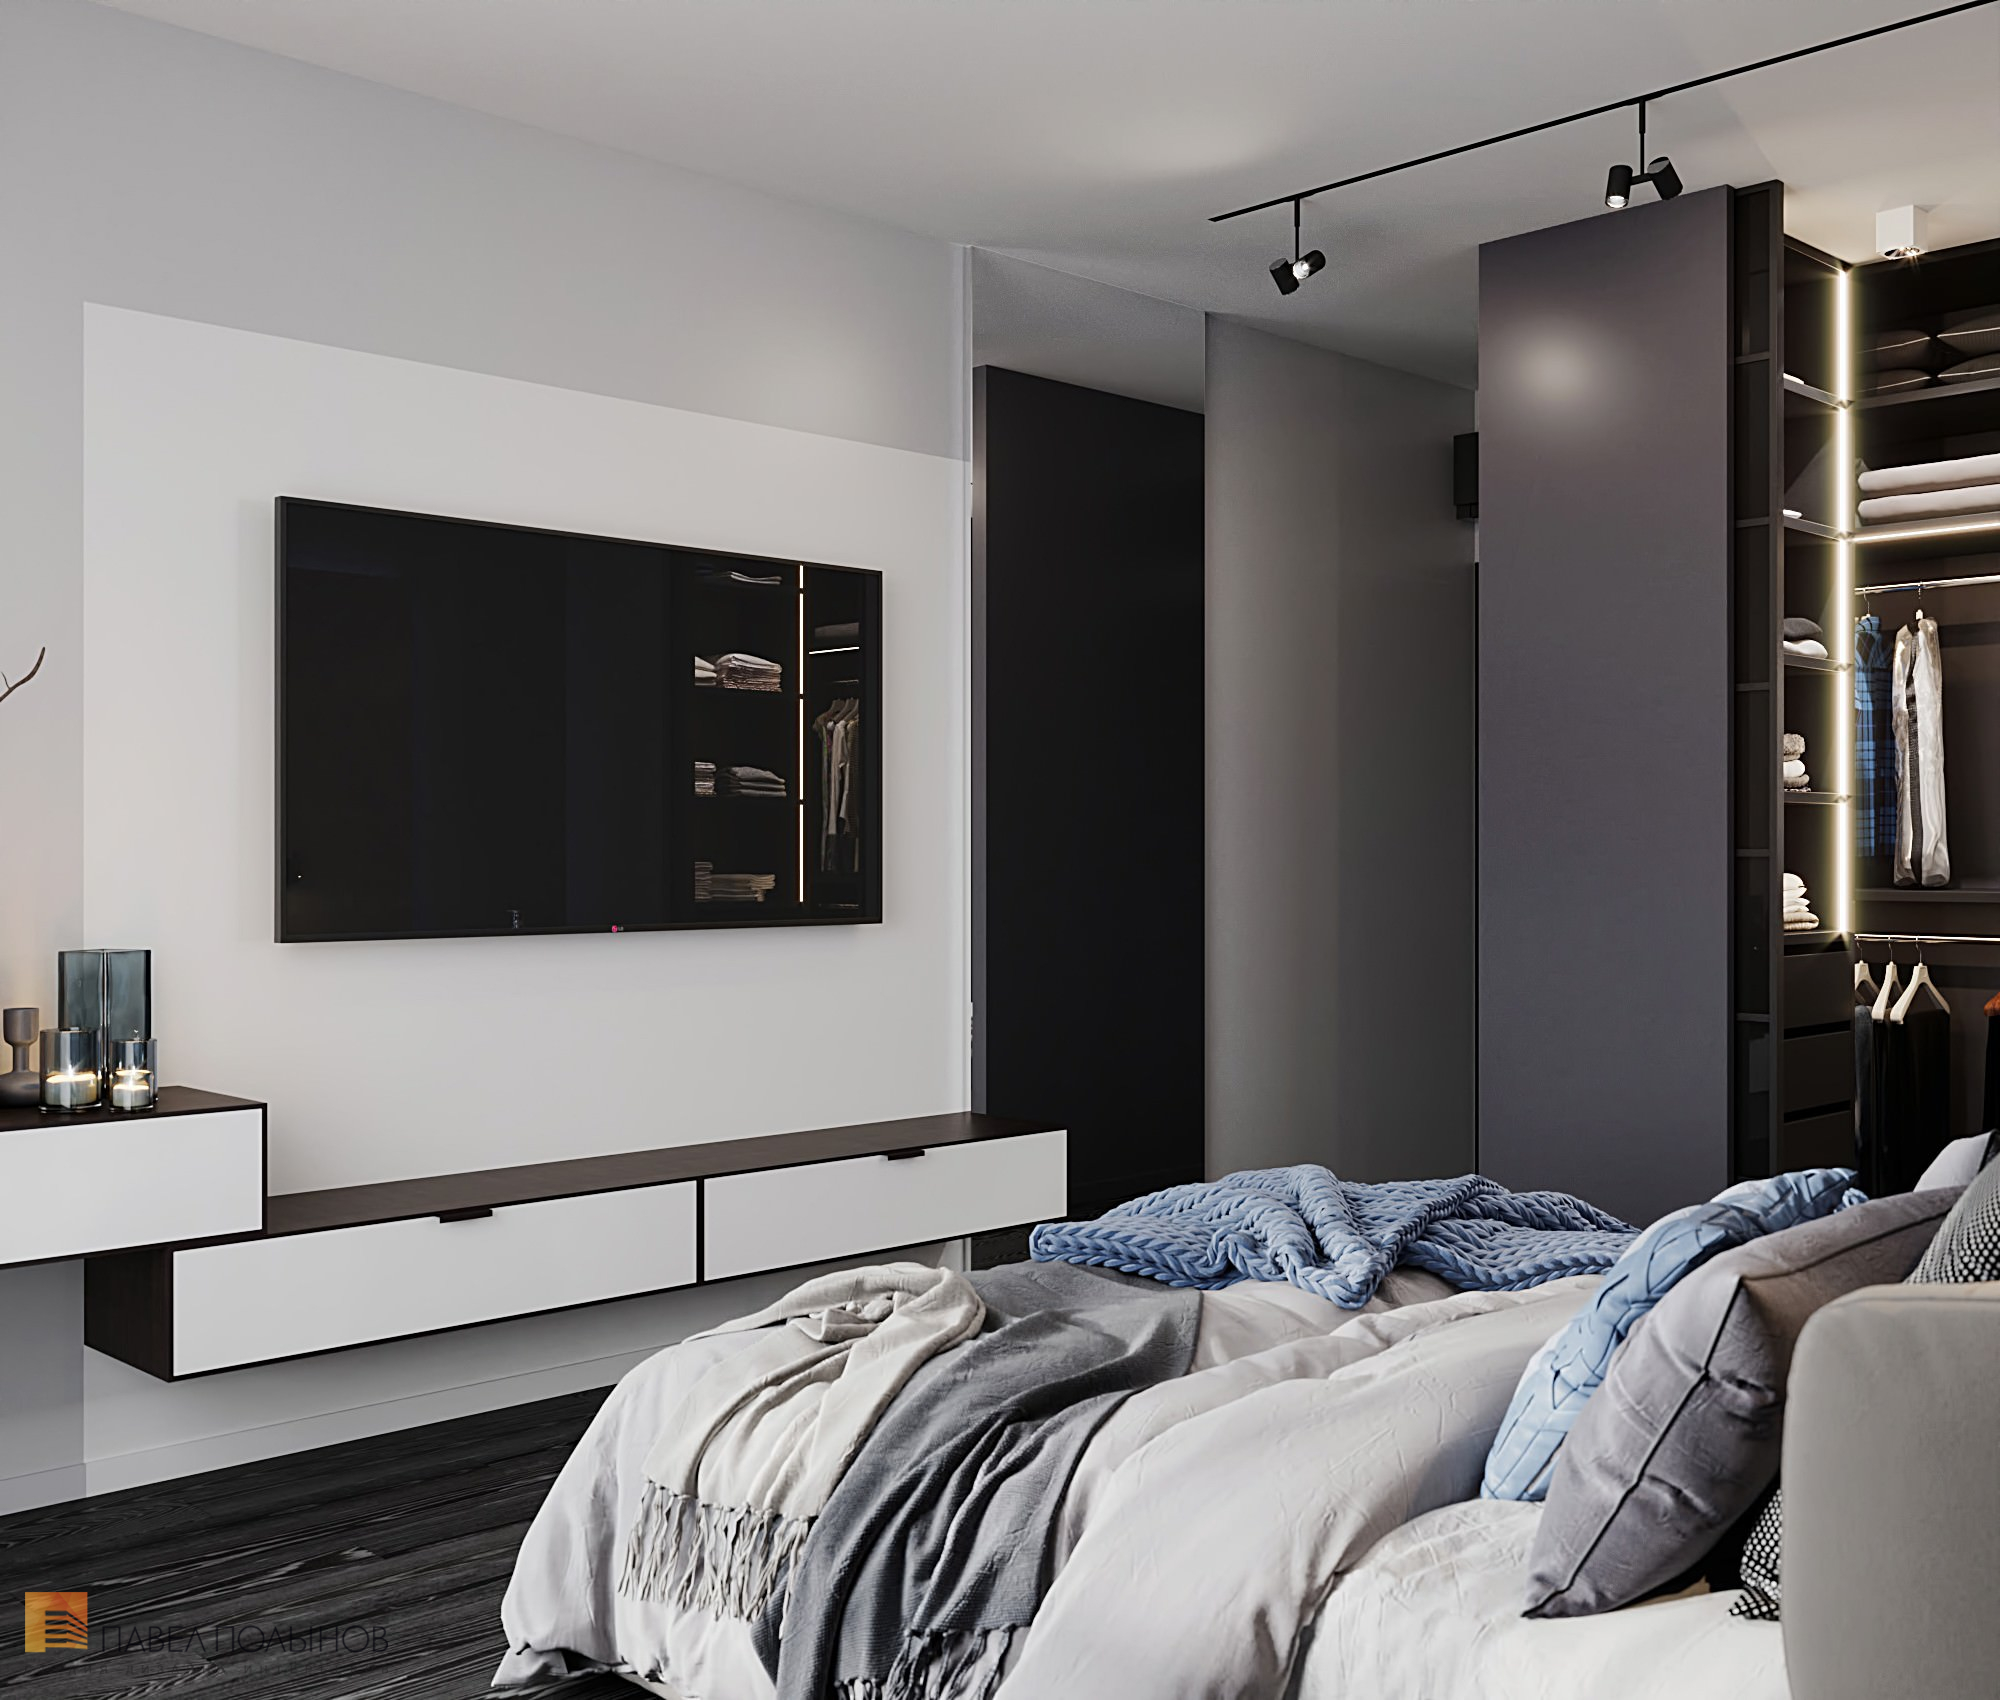 Фото дизайн интерьера спальни из проекта «Интерьер квартиры в современном стиле, ЖК «Остров», 90 кв.м.»